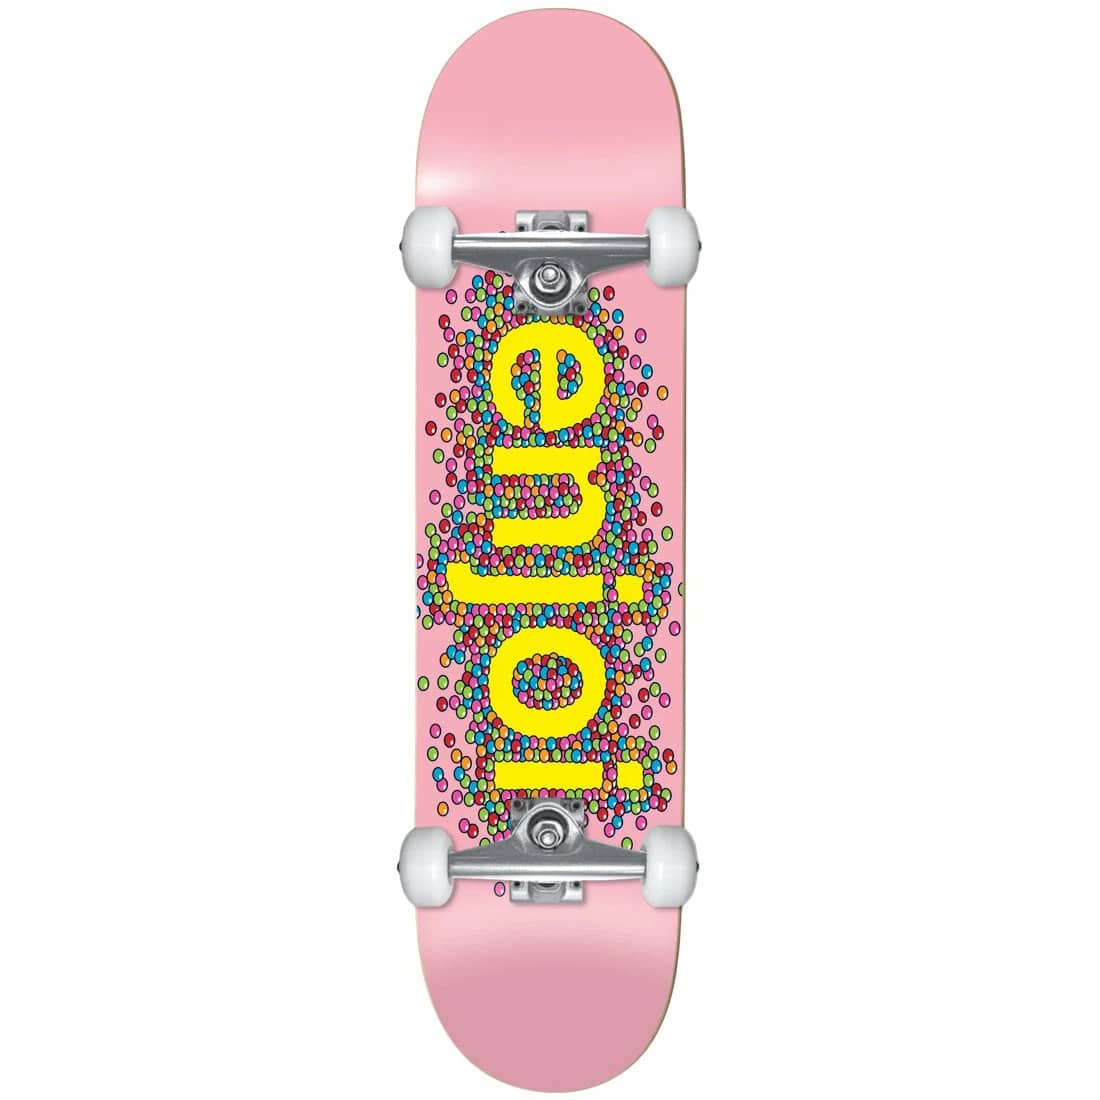 enjoi candy coated pink skateboard complet 8 25